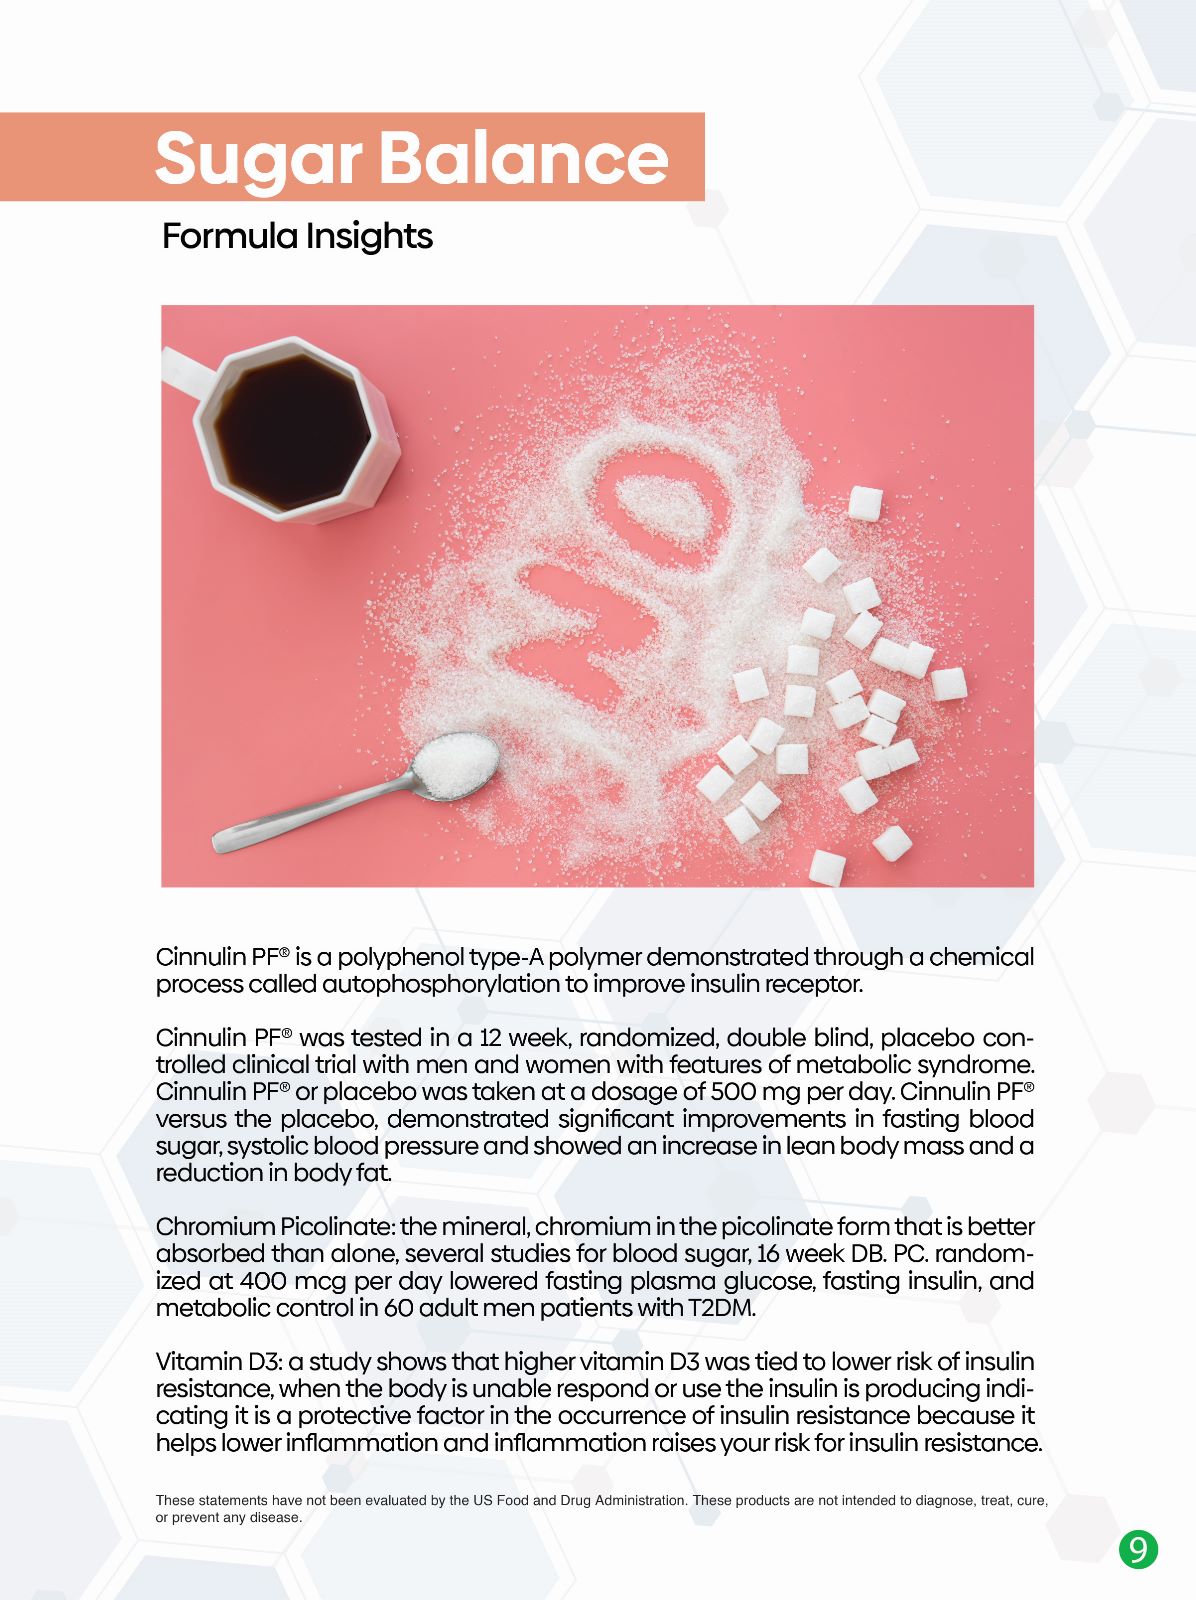 Sugar Balance: Cinnulin PF & Chromium Picolinate Sugar-Free Gummies